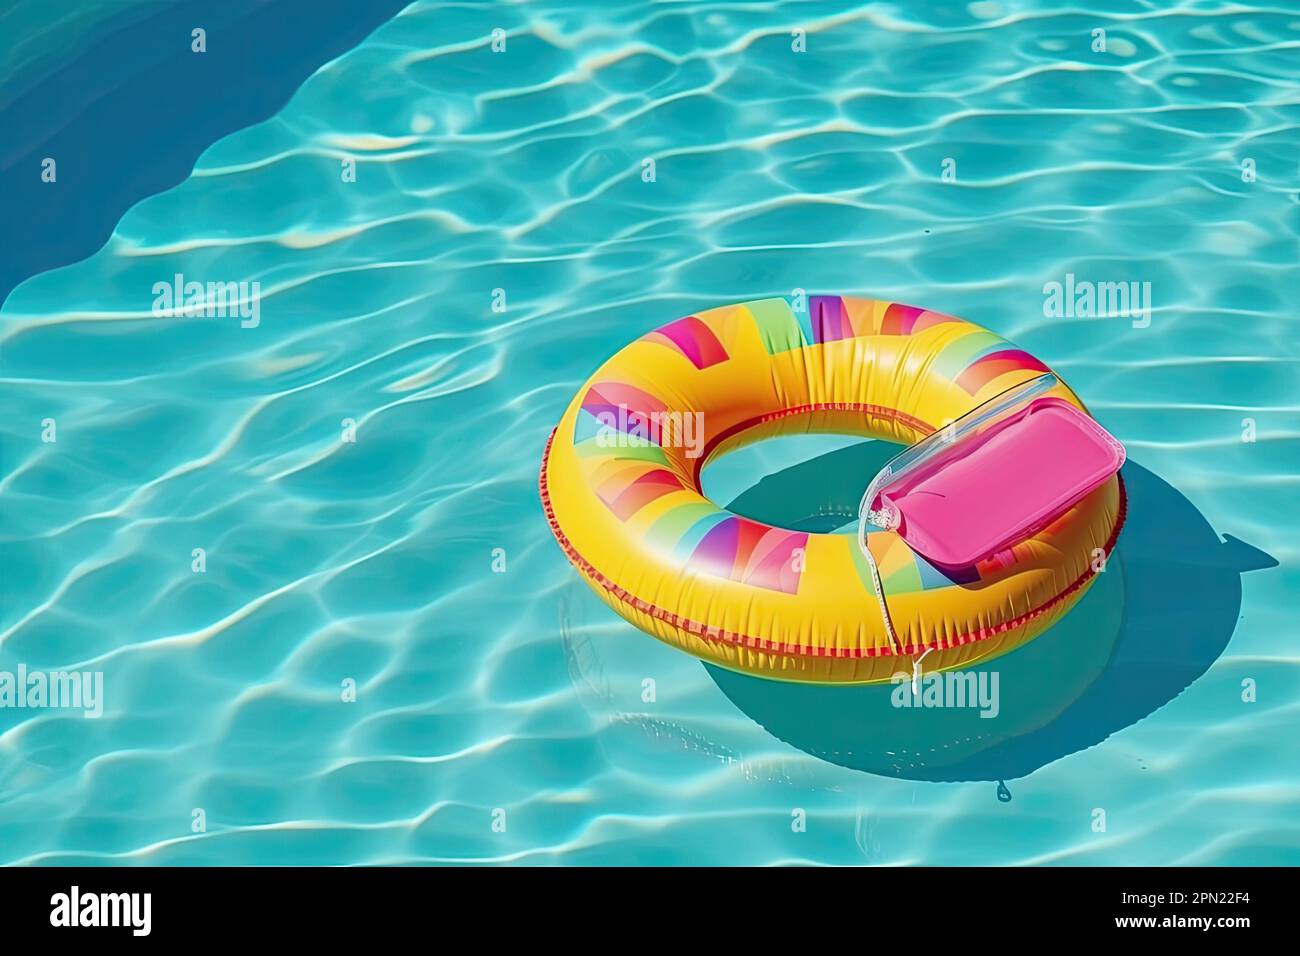 ilustración de un flotador redondo y amarillo en una piscina de agua azul  Fotografía de stock - Alamy